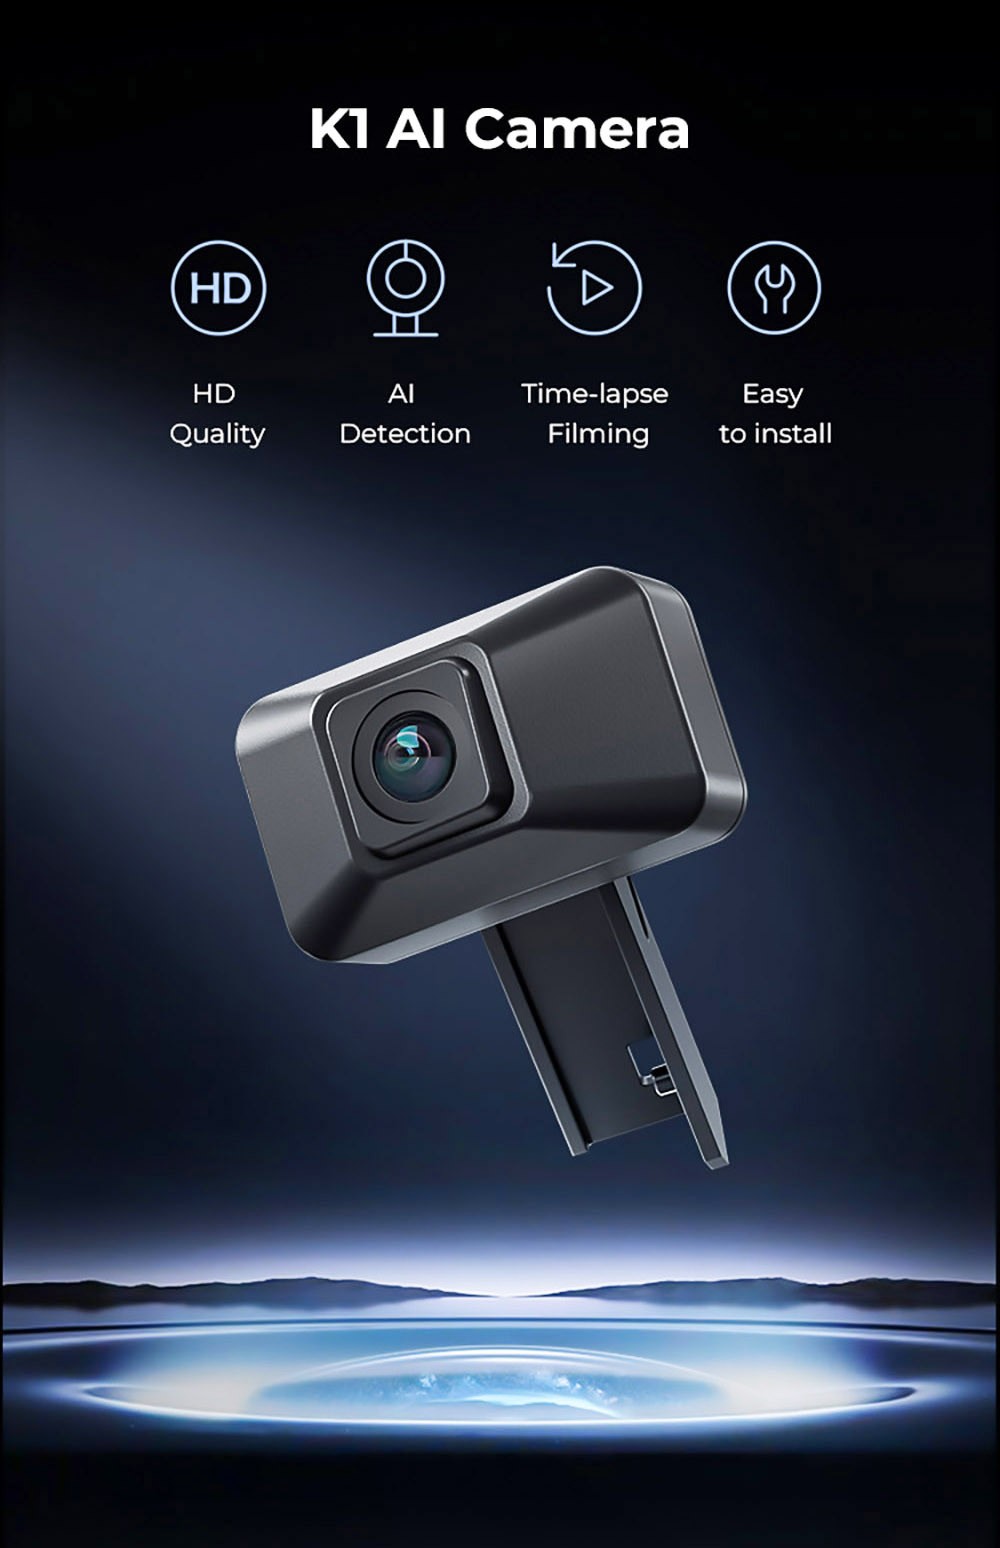 Kamera Creality K1 AI, HD kvalita, detekcia AI, časozberné snímanie